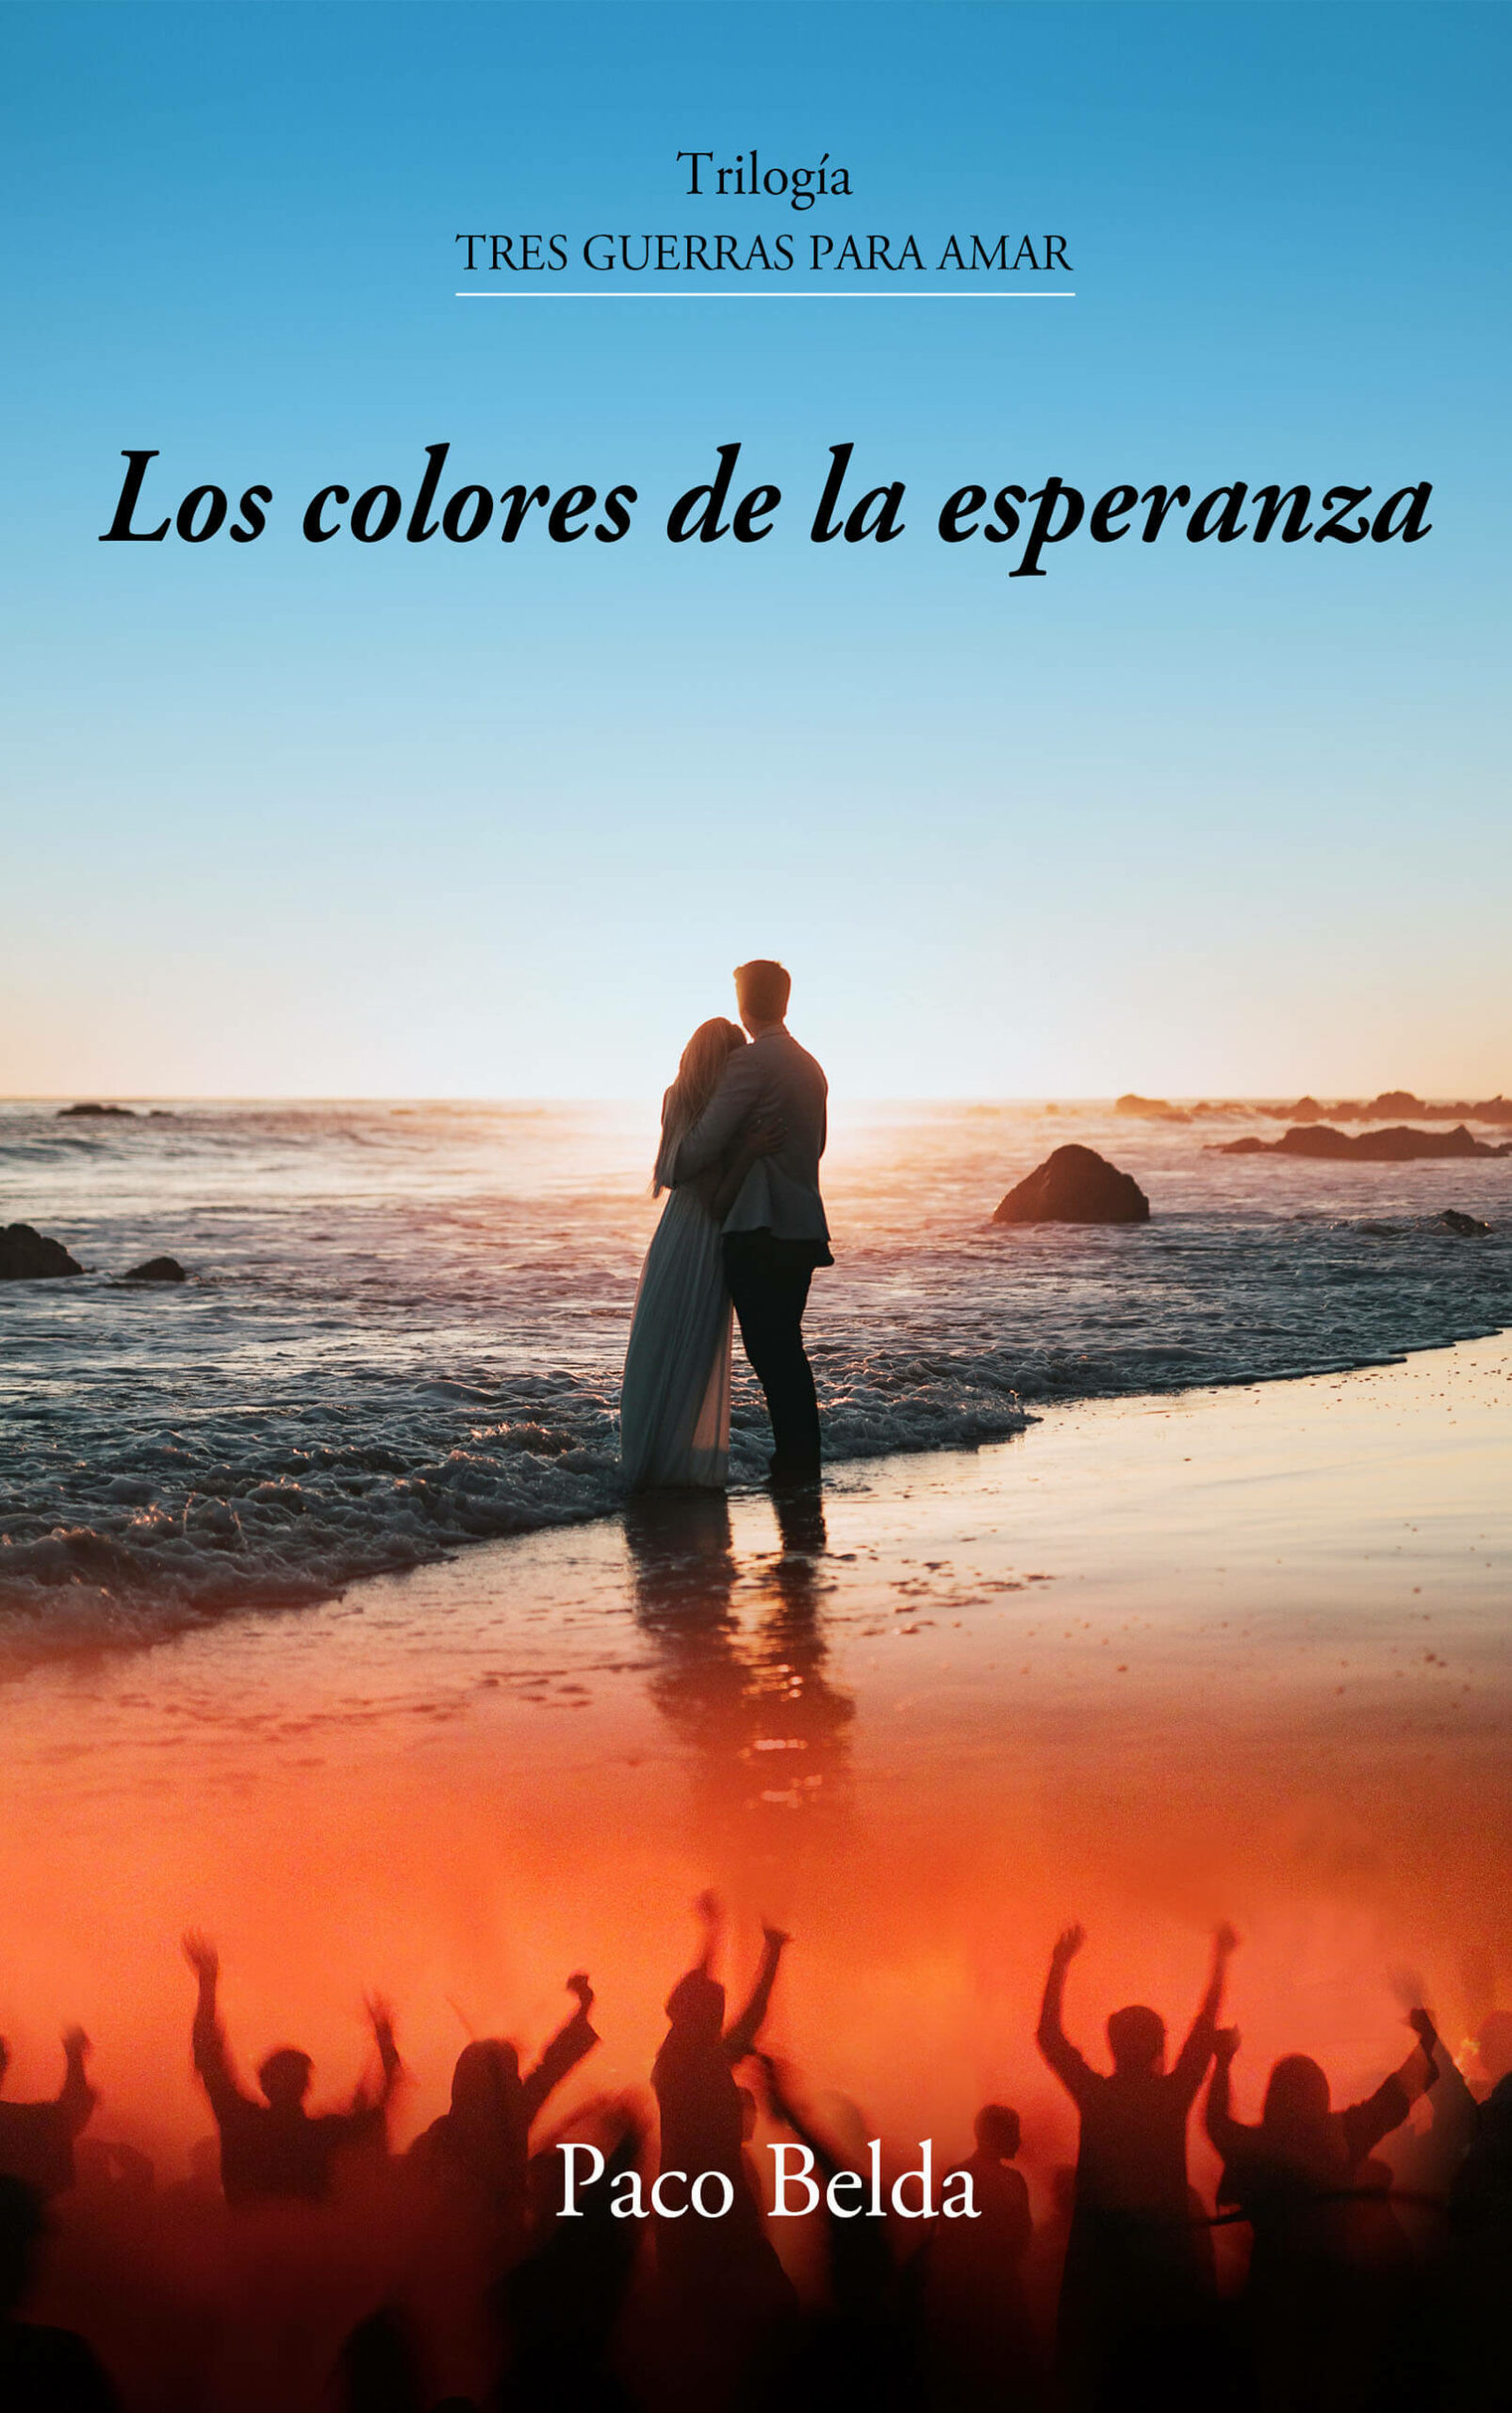 Los colores de la esperanza, de Paco Belda